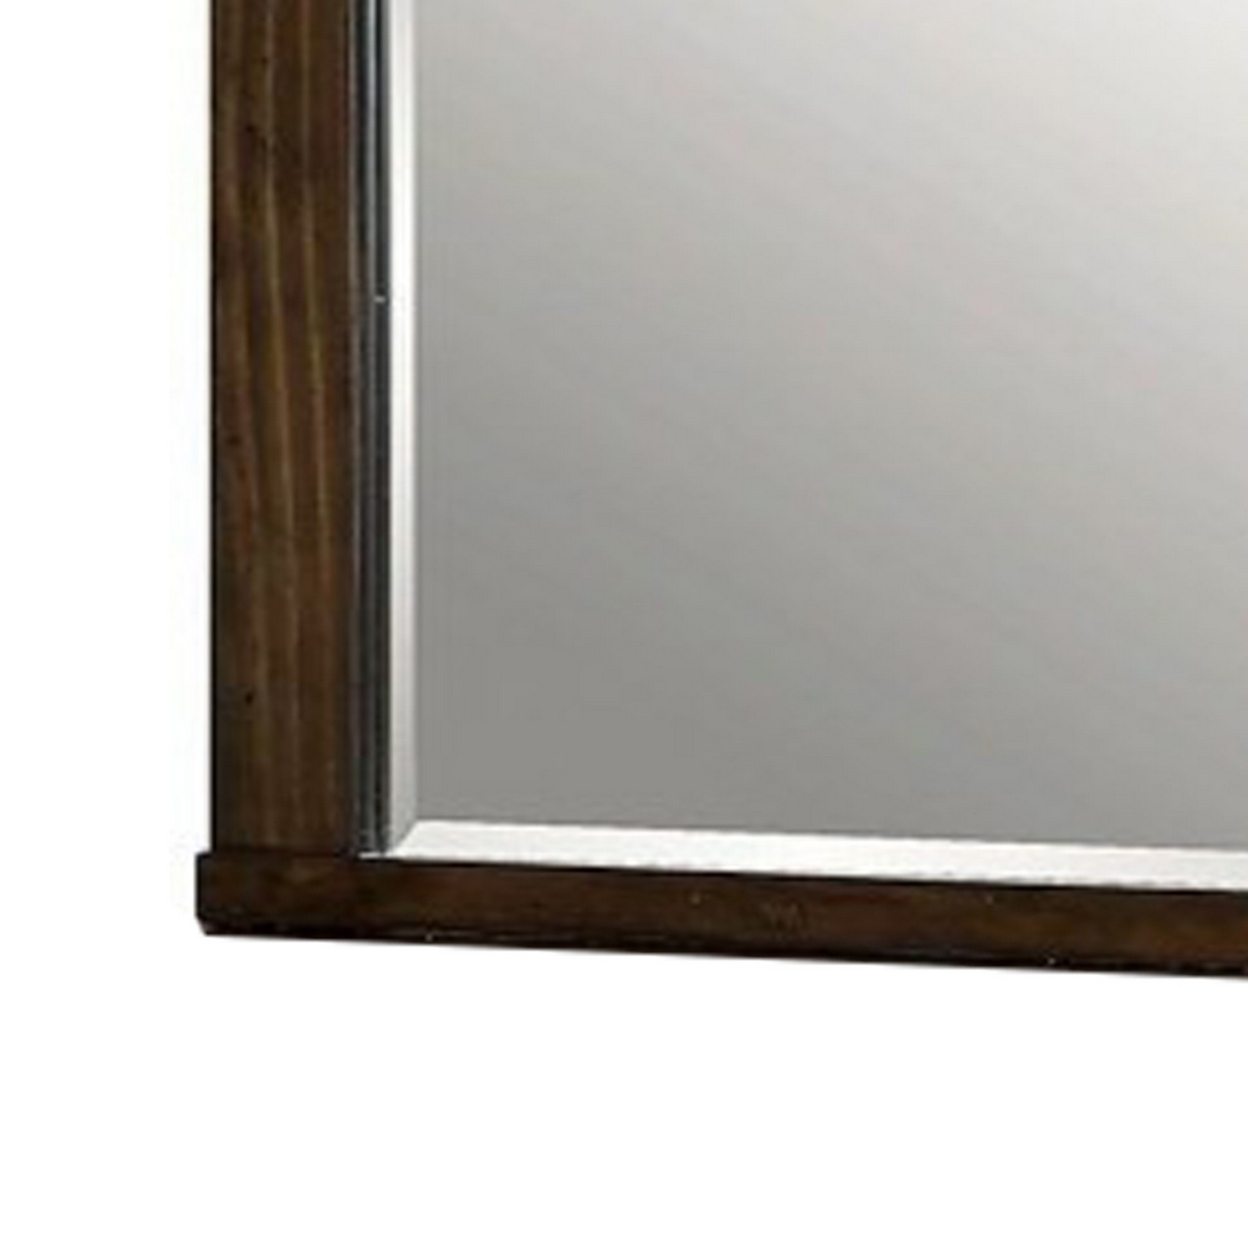 Rectangular Wooden Frame Mirror With Mounting Hardware, Walnut Brown- Saltoro Sherpi